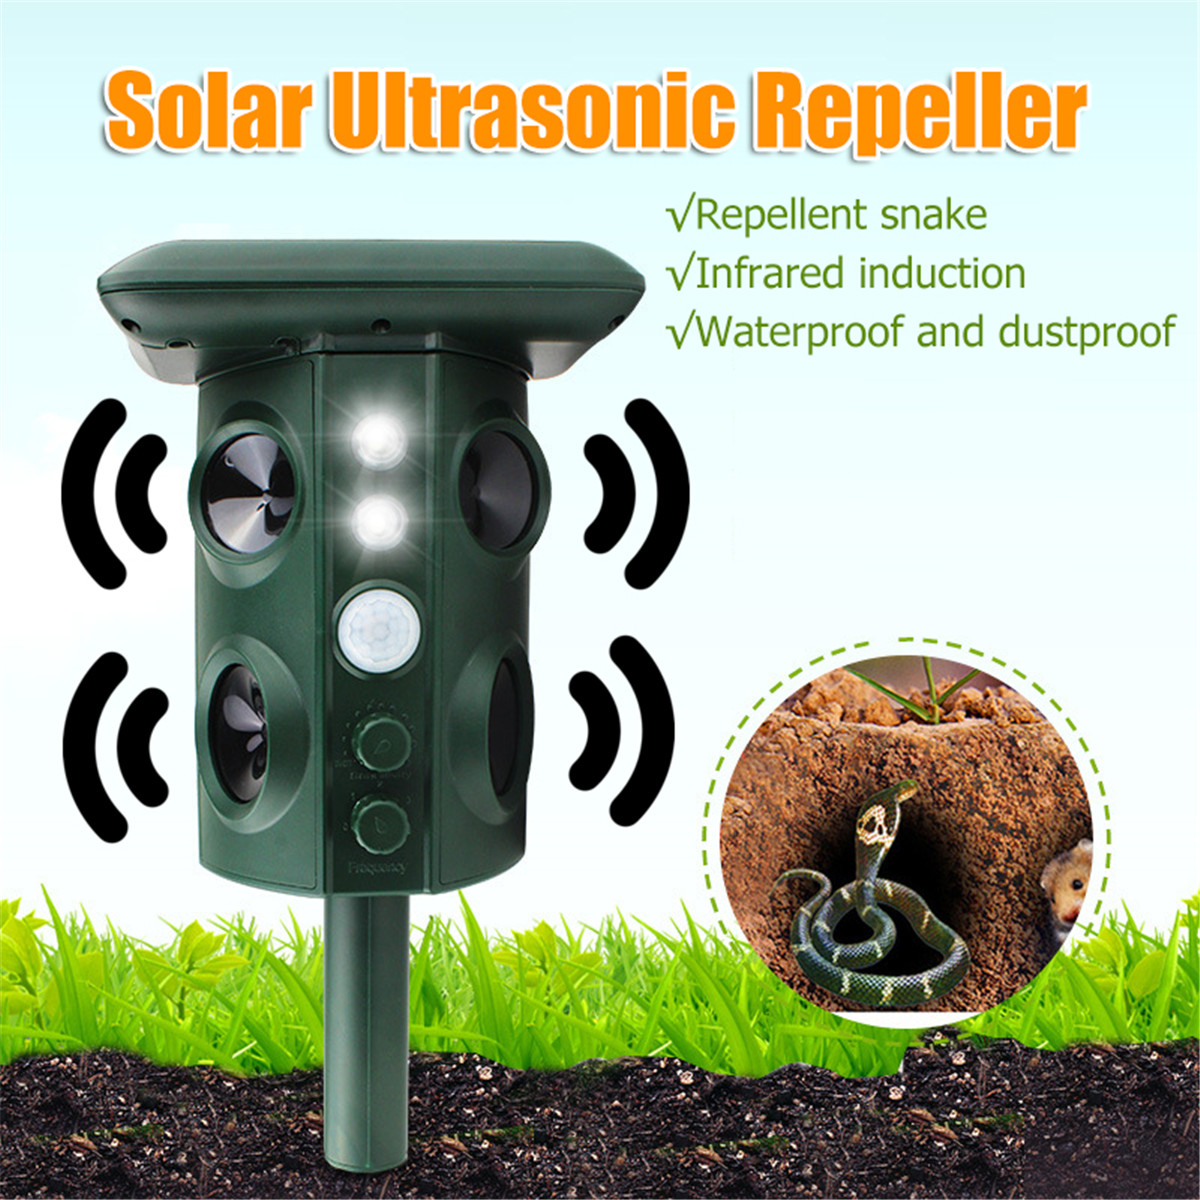 Solar-Power-Ultrasonic-Repeller-Cat-Dog-Pest-Infrared-Repellent-Sensor-Animal-1564291